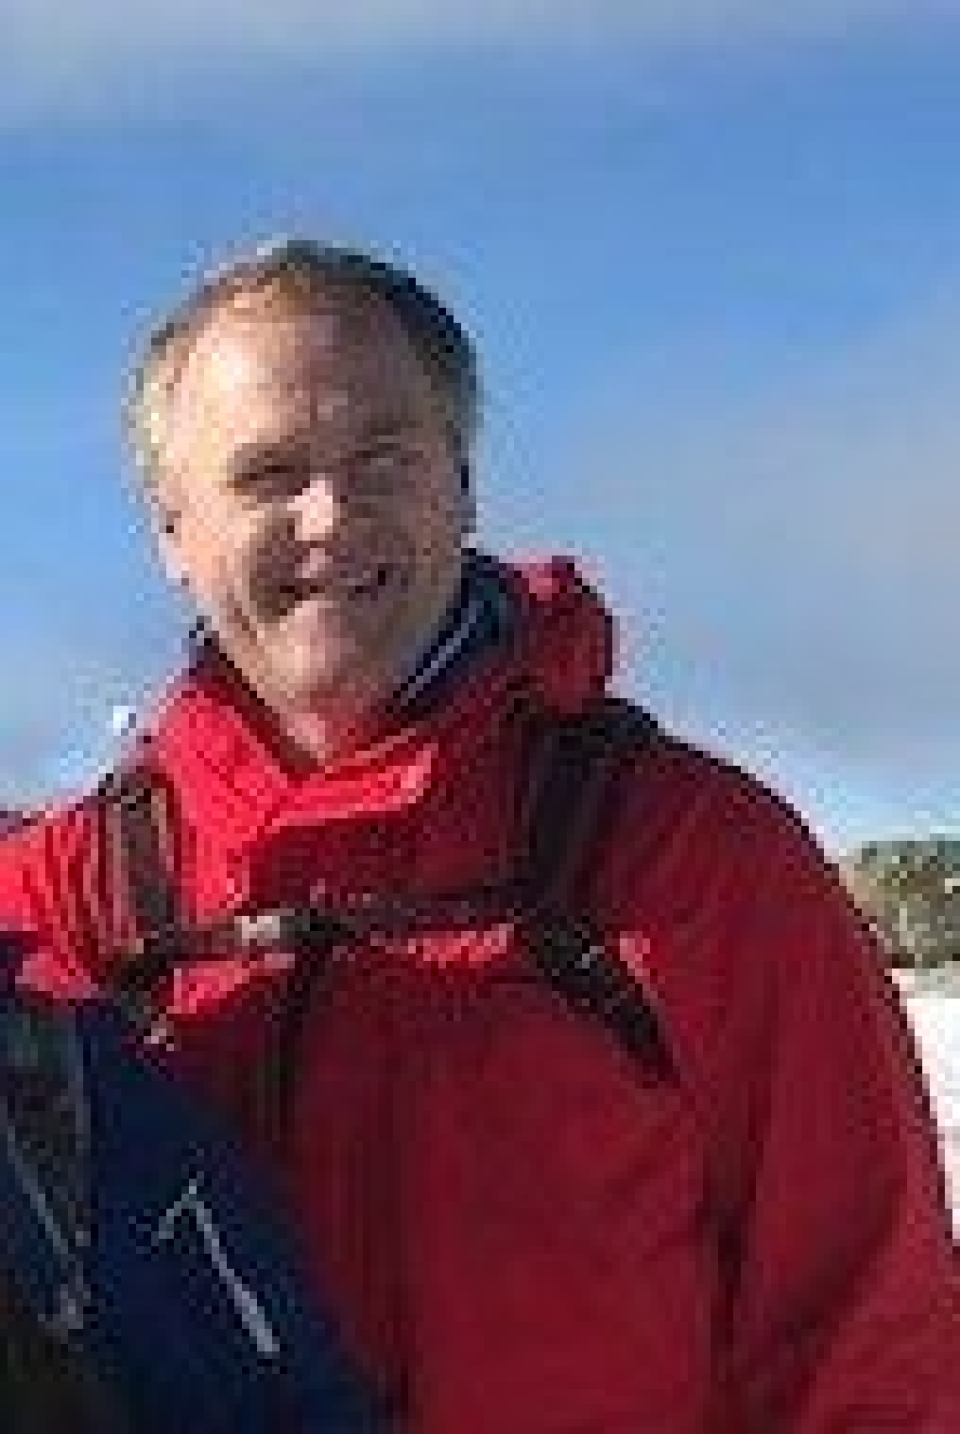 BEDRE: – Dette gjøres for at det skal bli bedre for folk og ferdes i skog og mark, sier Svein Skrattalsrud i Skiforeningen.